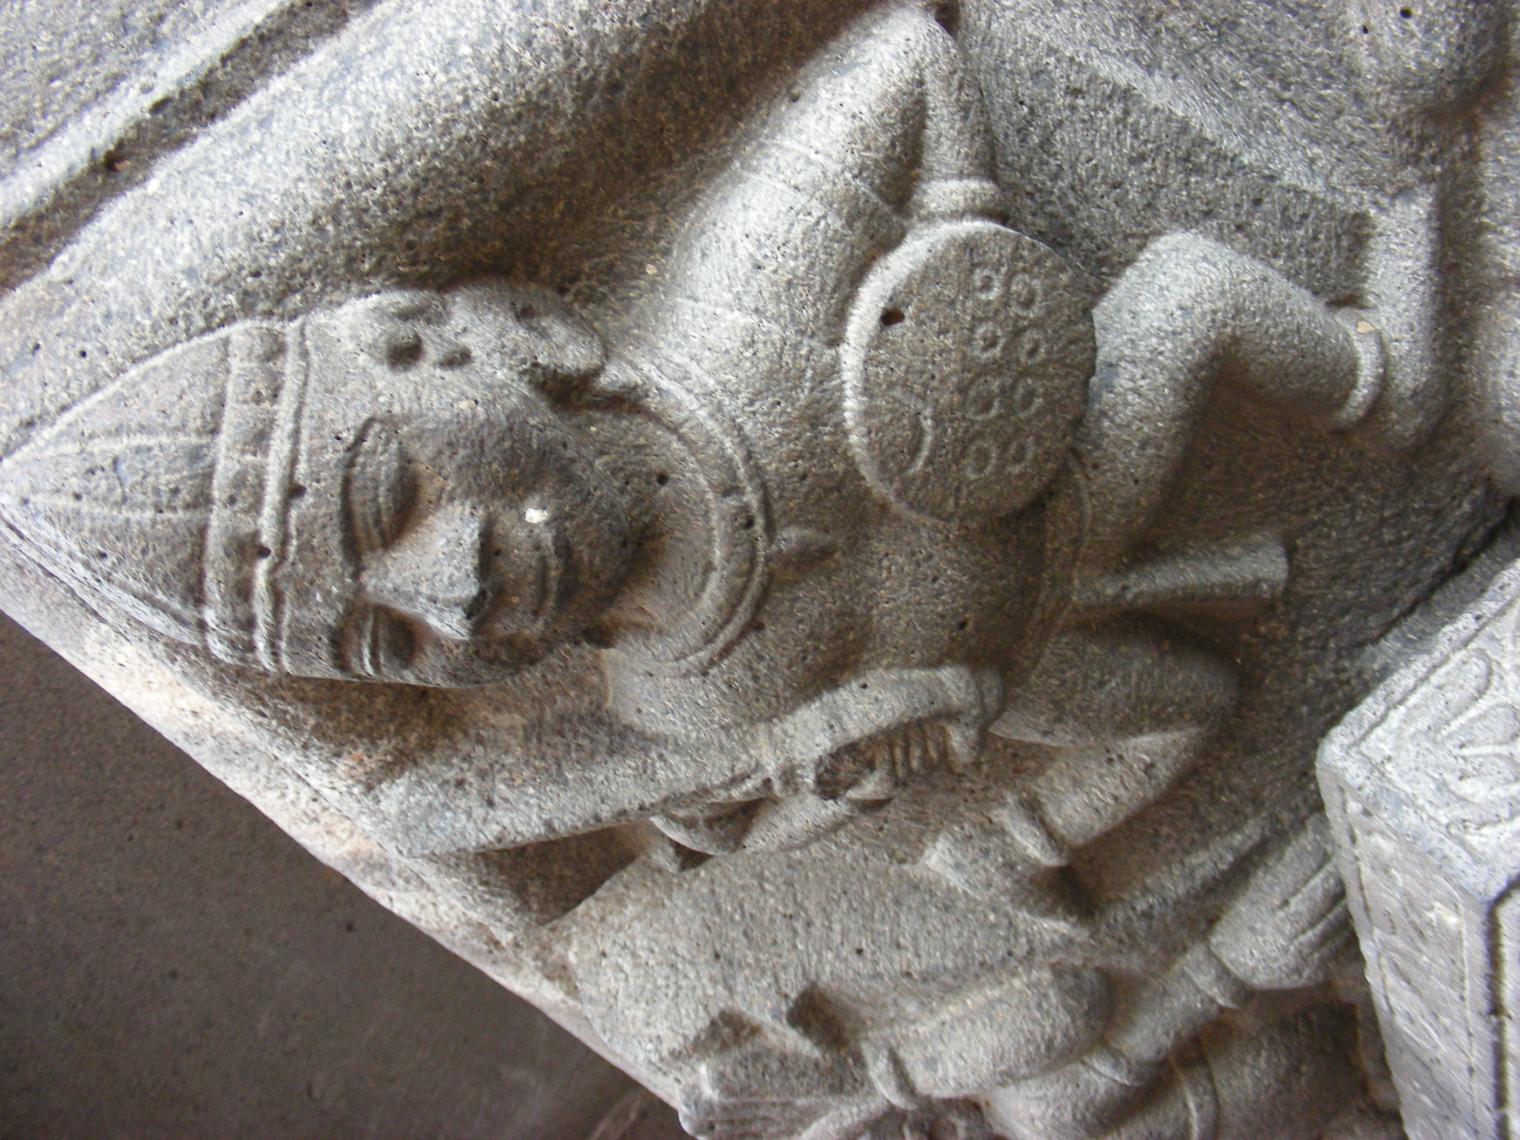 Shikhar Shinganapur Temple